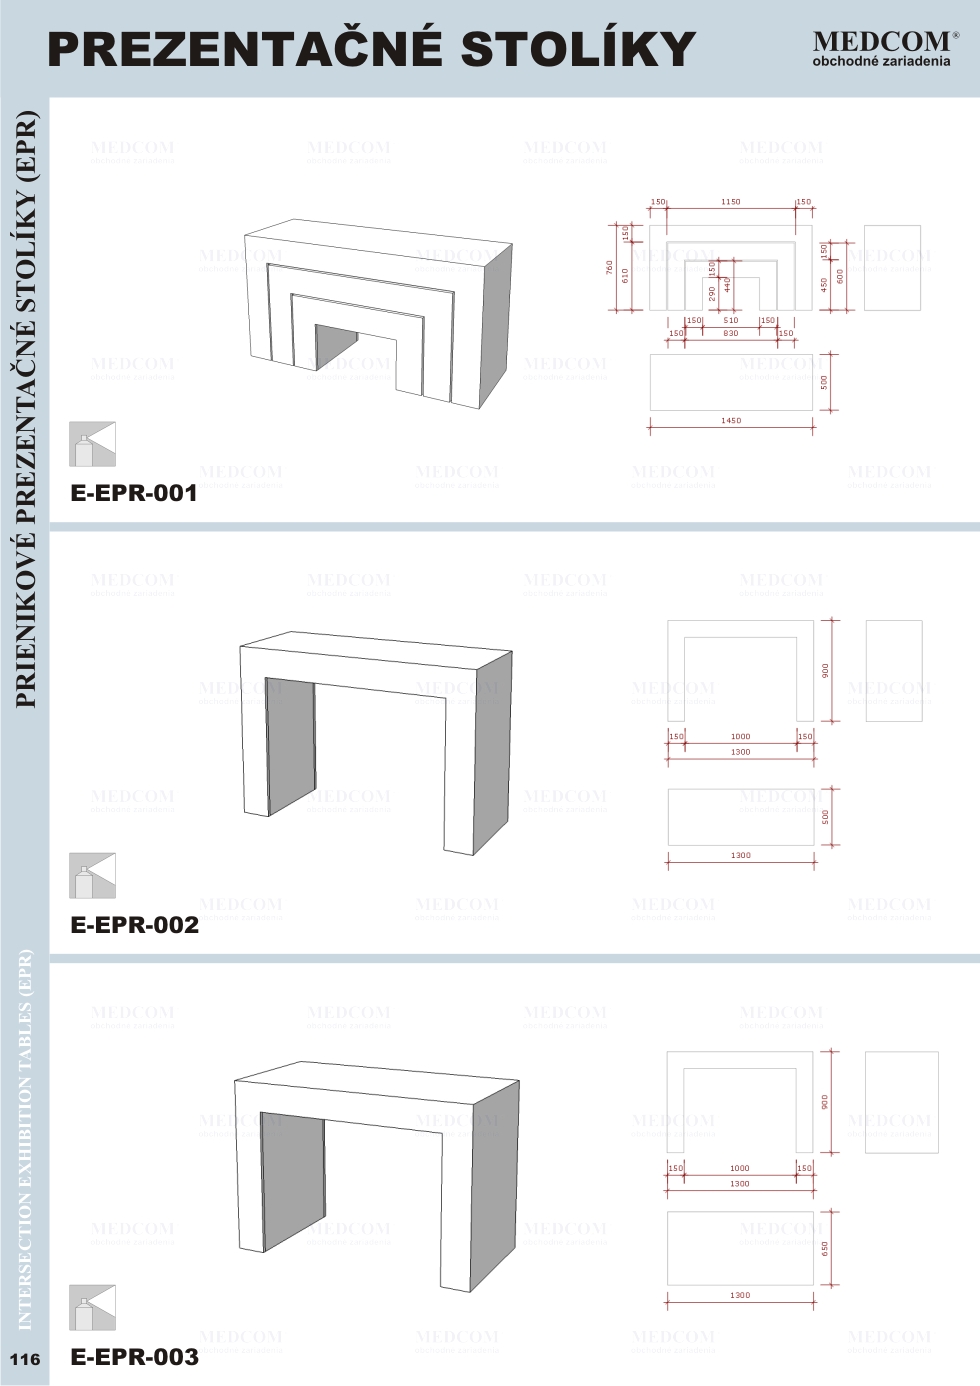 Exkluzívne zostavy a komponenty; Prezentačné stolíky; Prienikové prezentačné stolíky